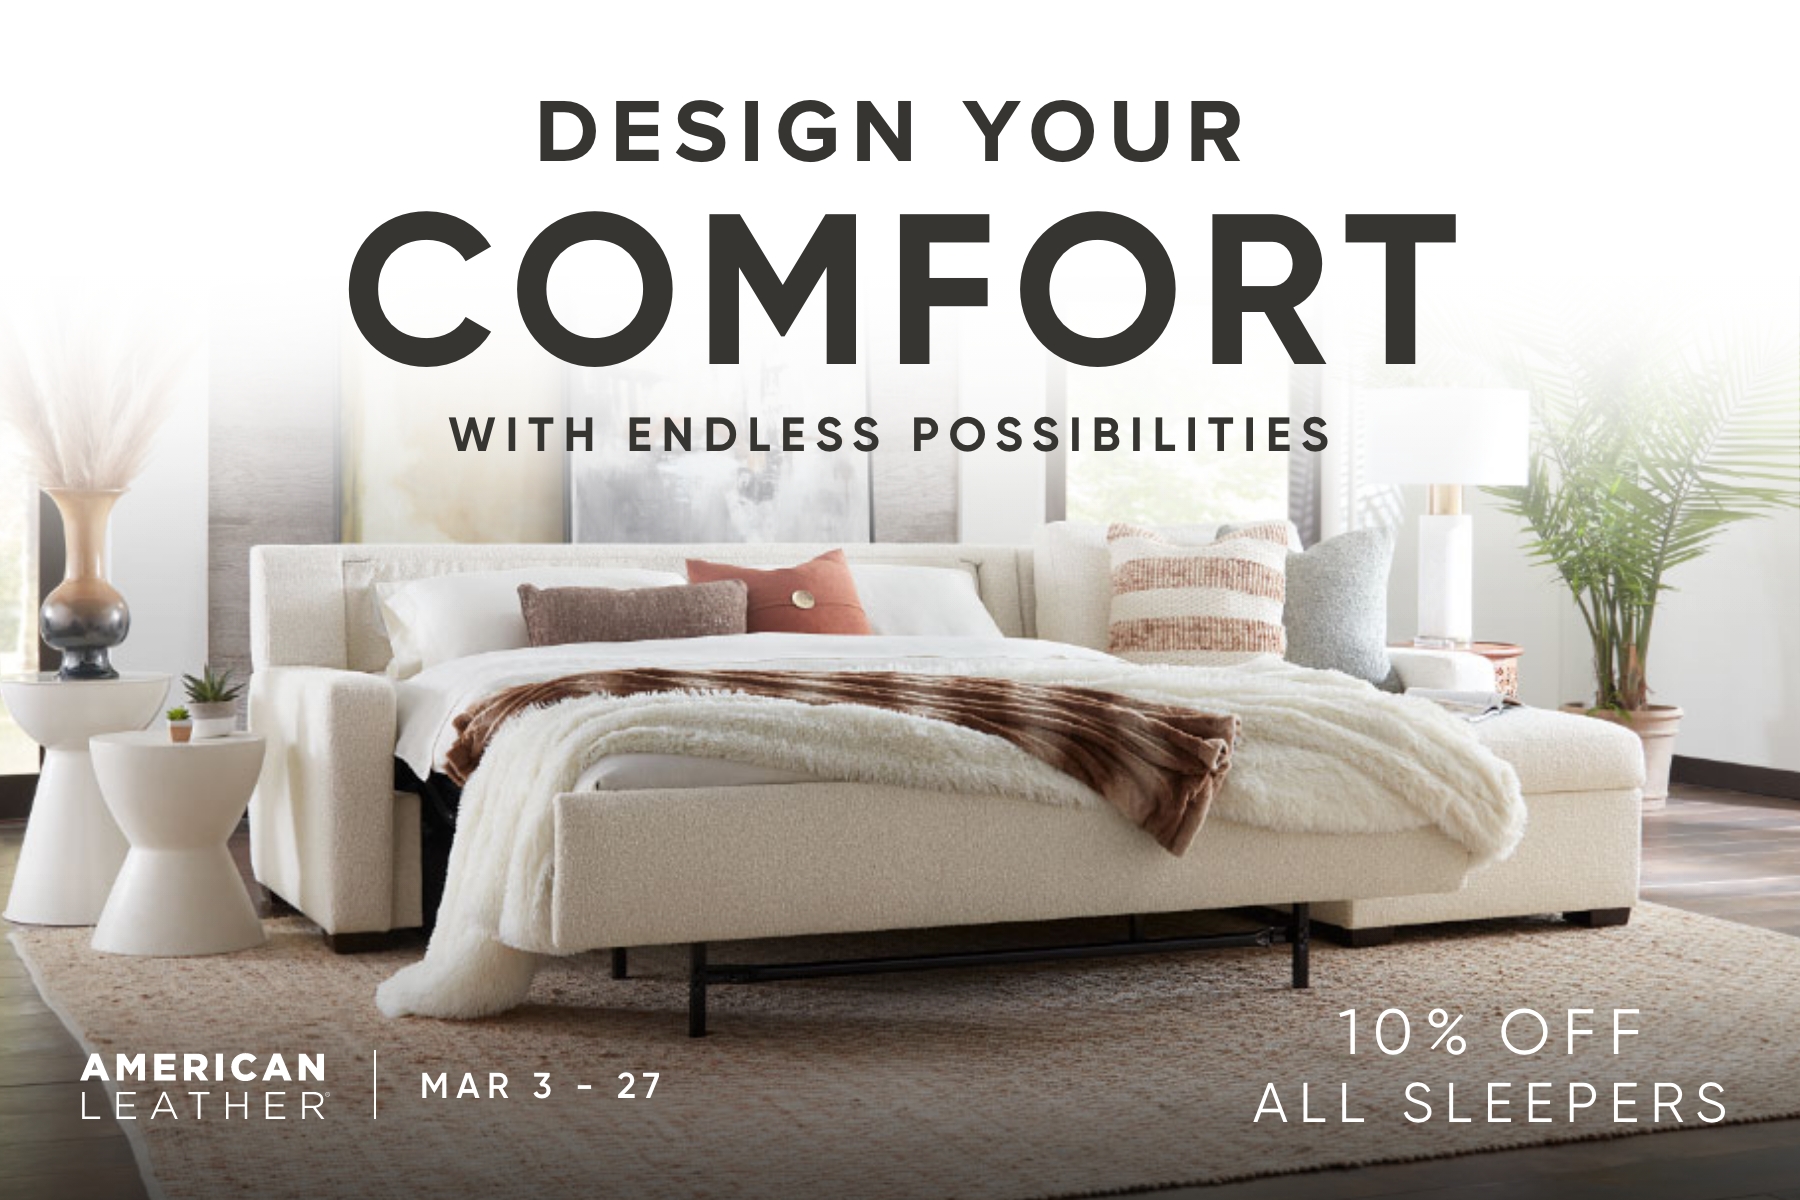 Design Your Comfort - Comfort Sleeper Sale